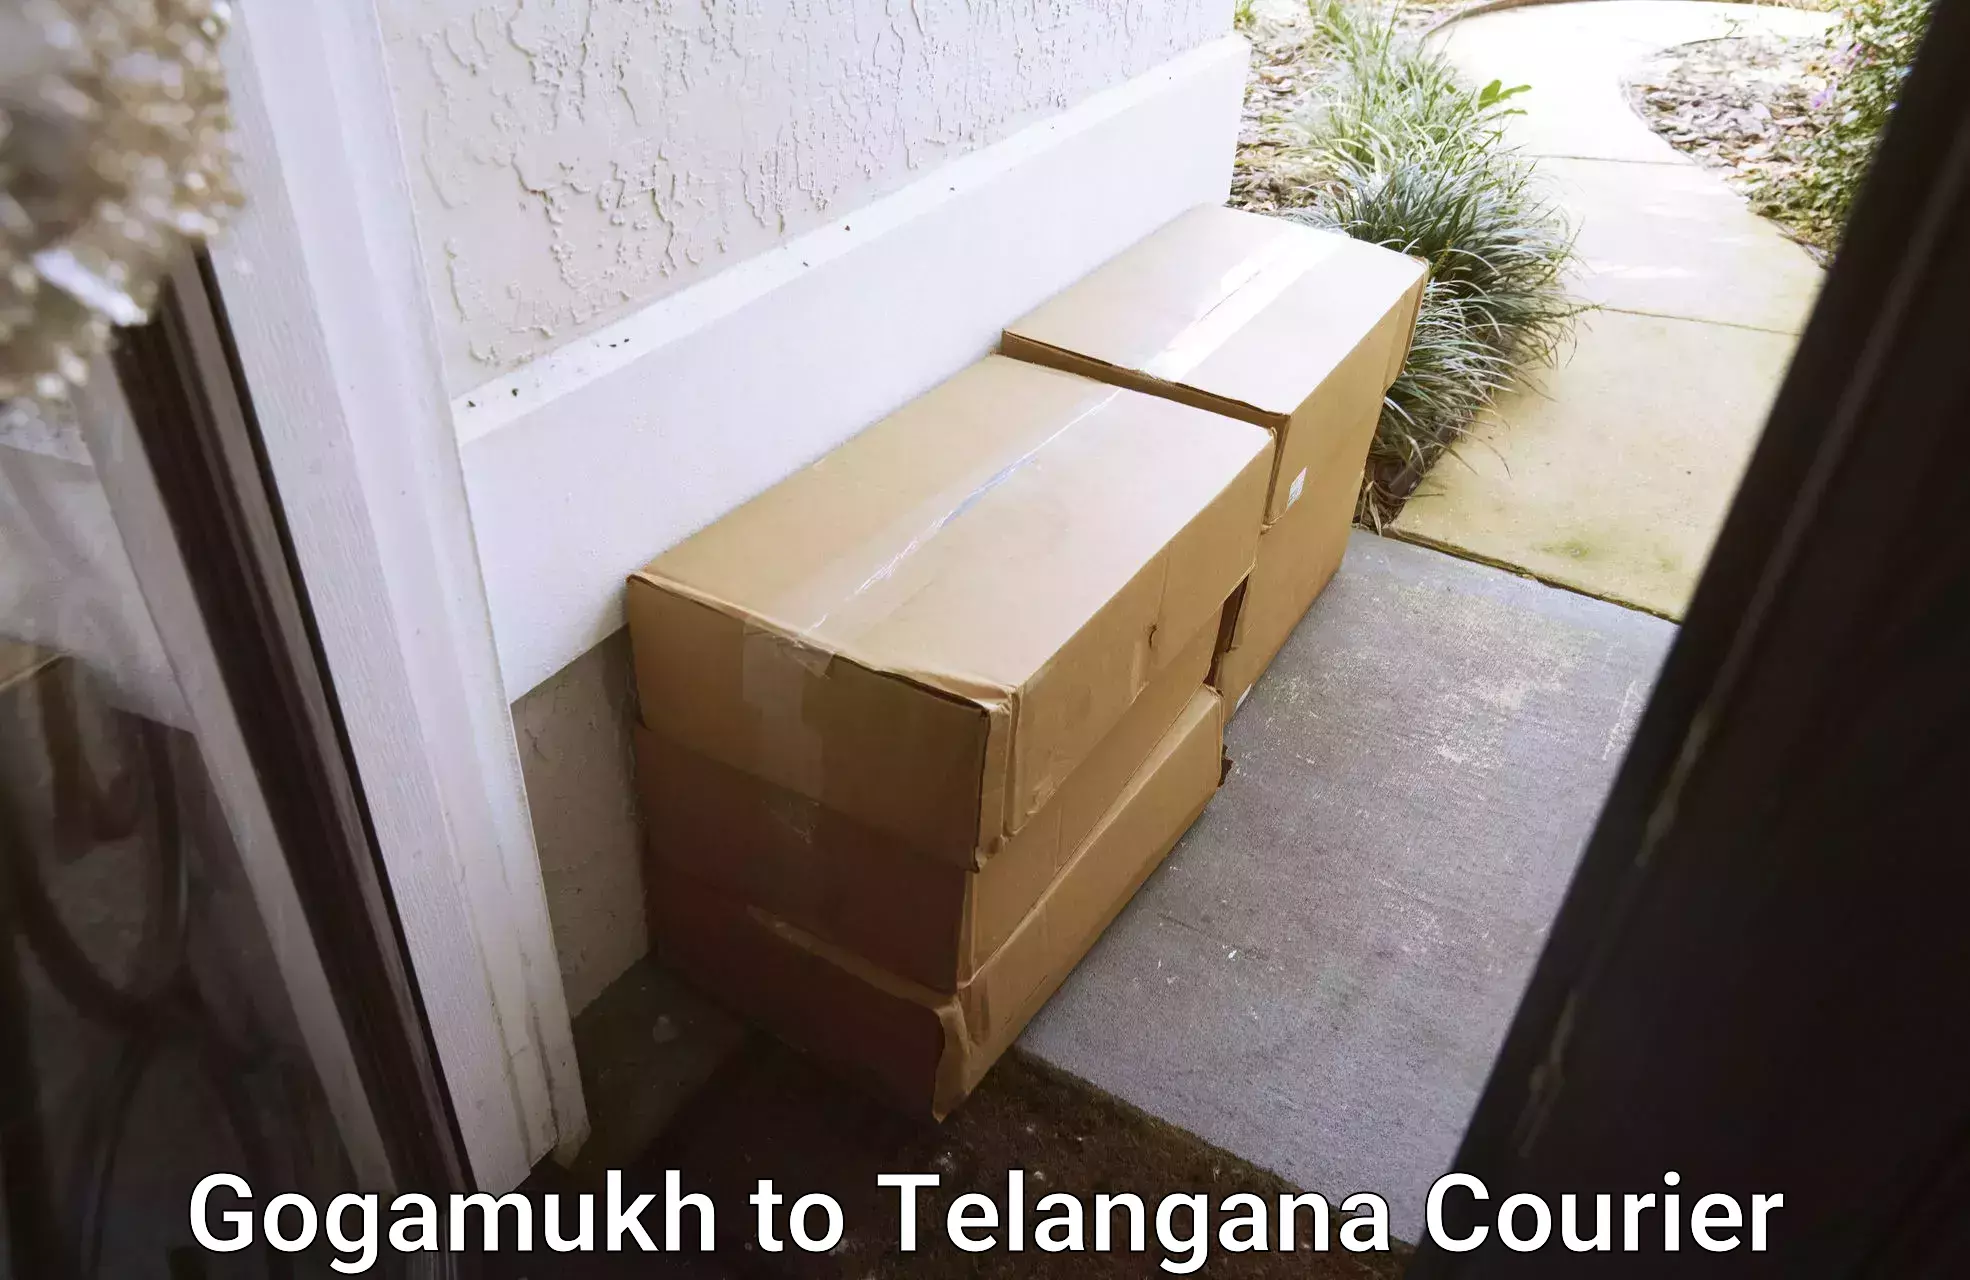 High-capacity parcel service Gogamukh to Gangadhara